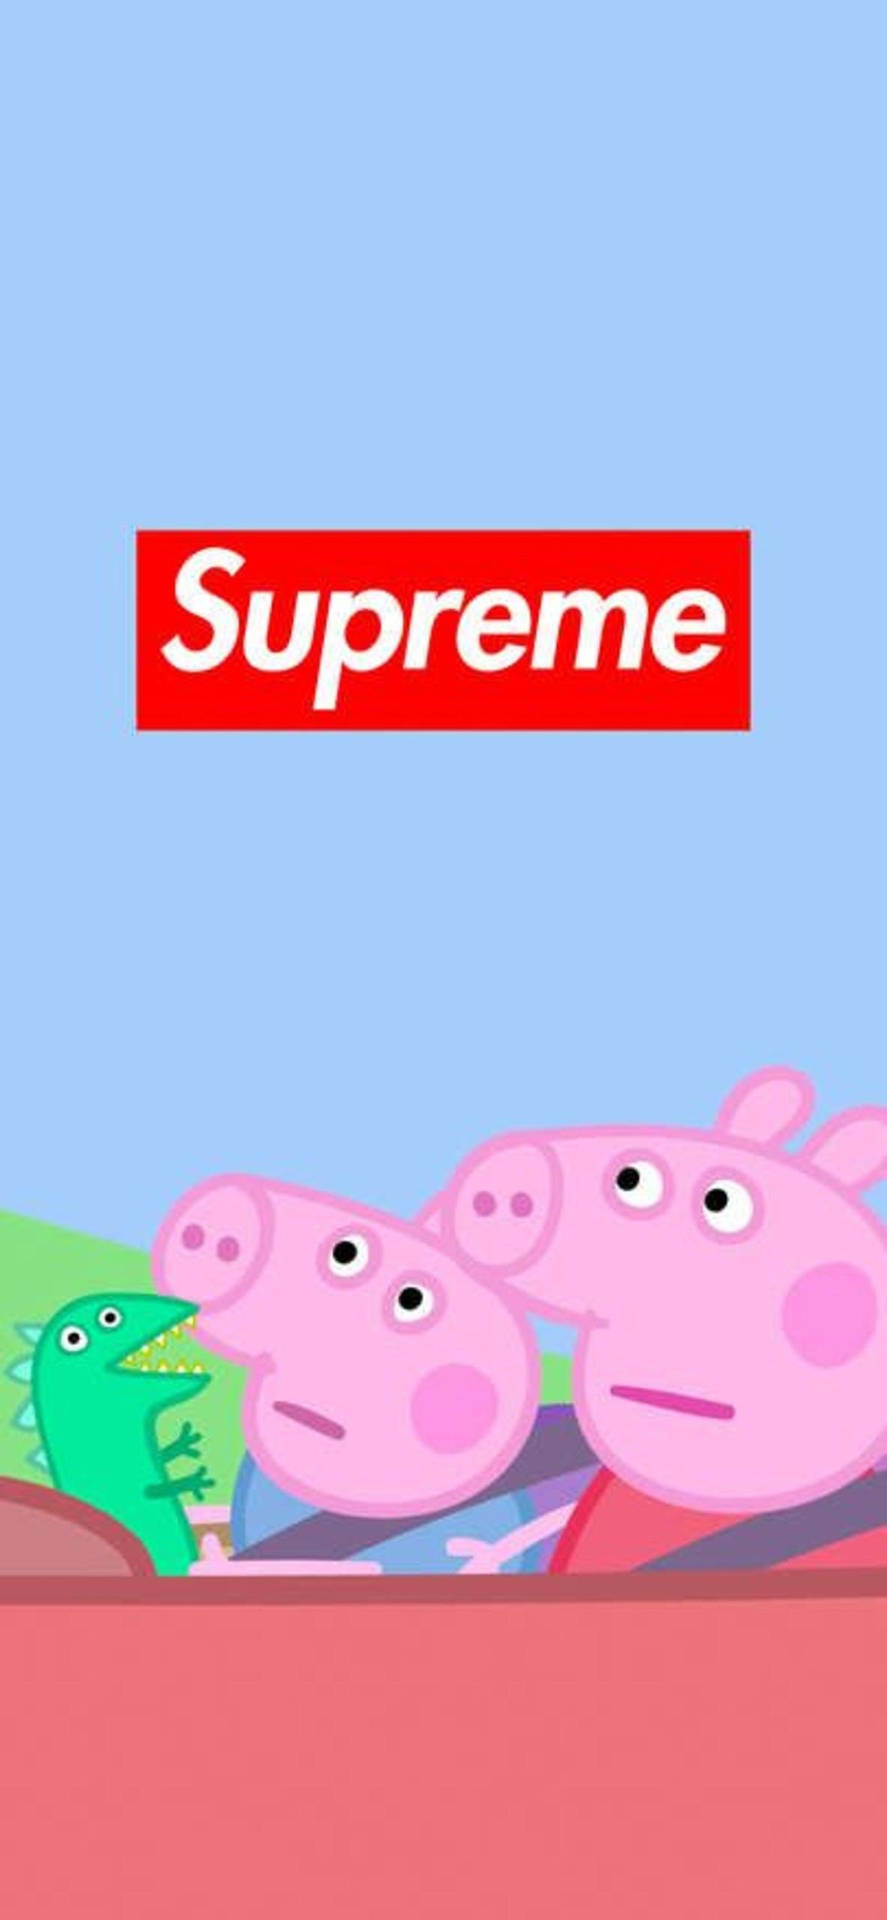 Supræne Peppa Pig Meme-motiv: Farverigt design med et humoristisk ansigt fra en klassisk tv-serie. Wallpaper